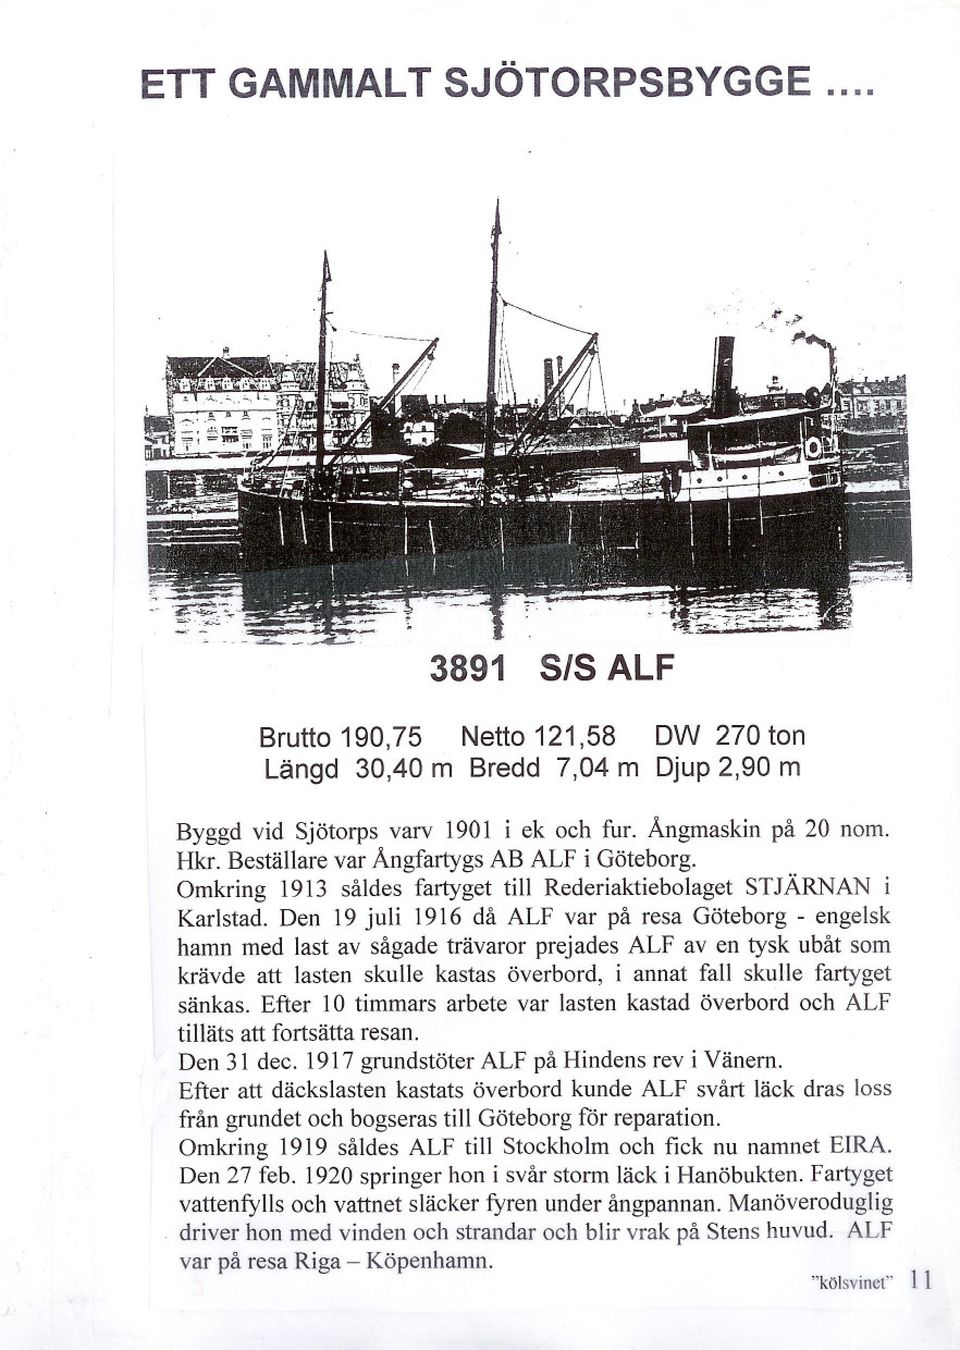 Den 19 juli 1916 då ALF var på resa Göteborg - engelsk hamn med last av sågade trävaror prejades ALF aven tysk ubåt som krävde att lasten skulle kastas överbord, i annat fall skulle fartyget sänkas.